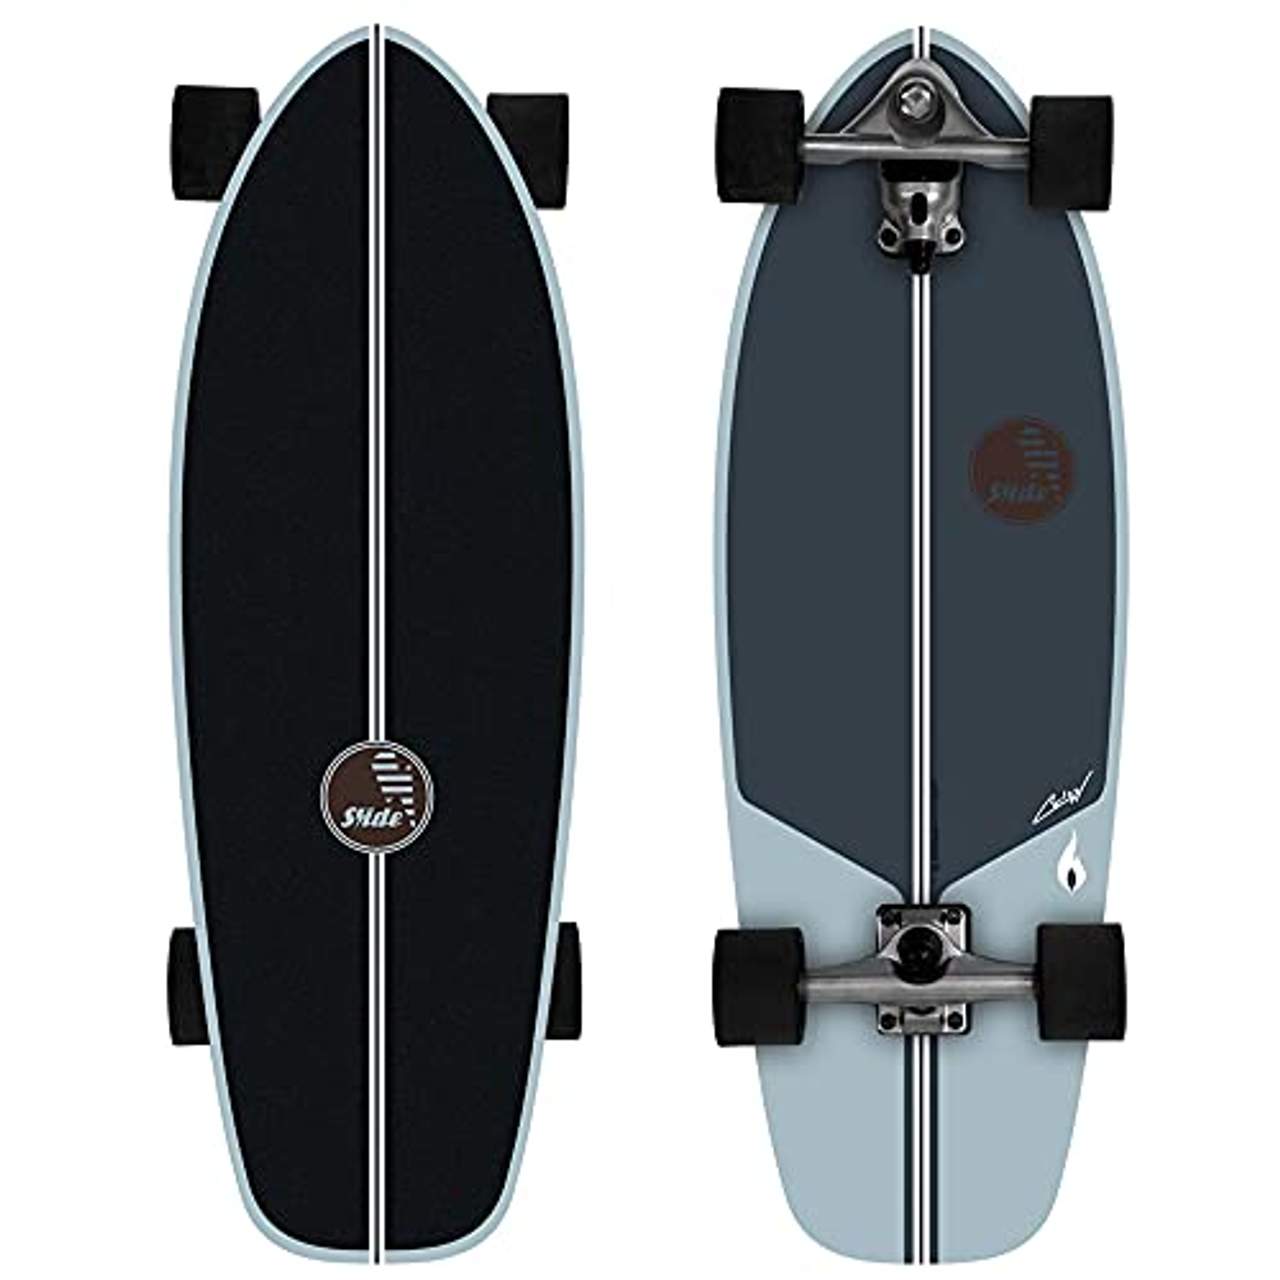 Slide CMC Performance 31" Surfskateboard